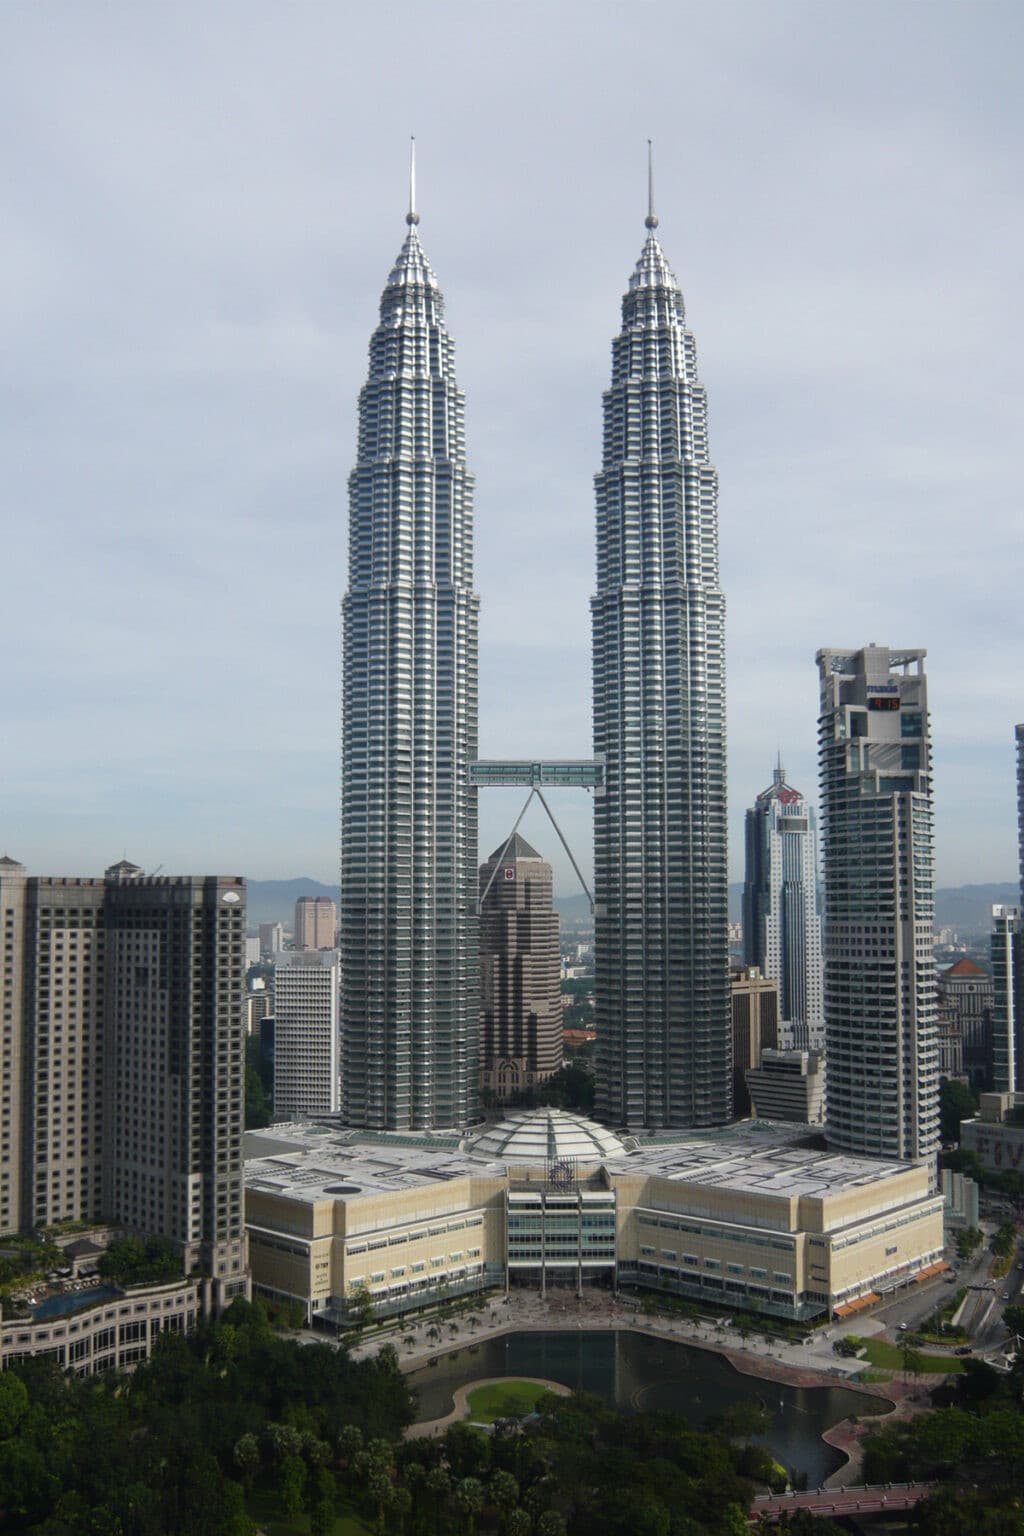 #architettura Le Petronas Towers di Kuala Lumpur: le torri gemelle più alte del mondo